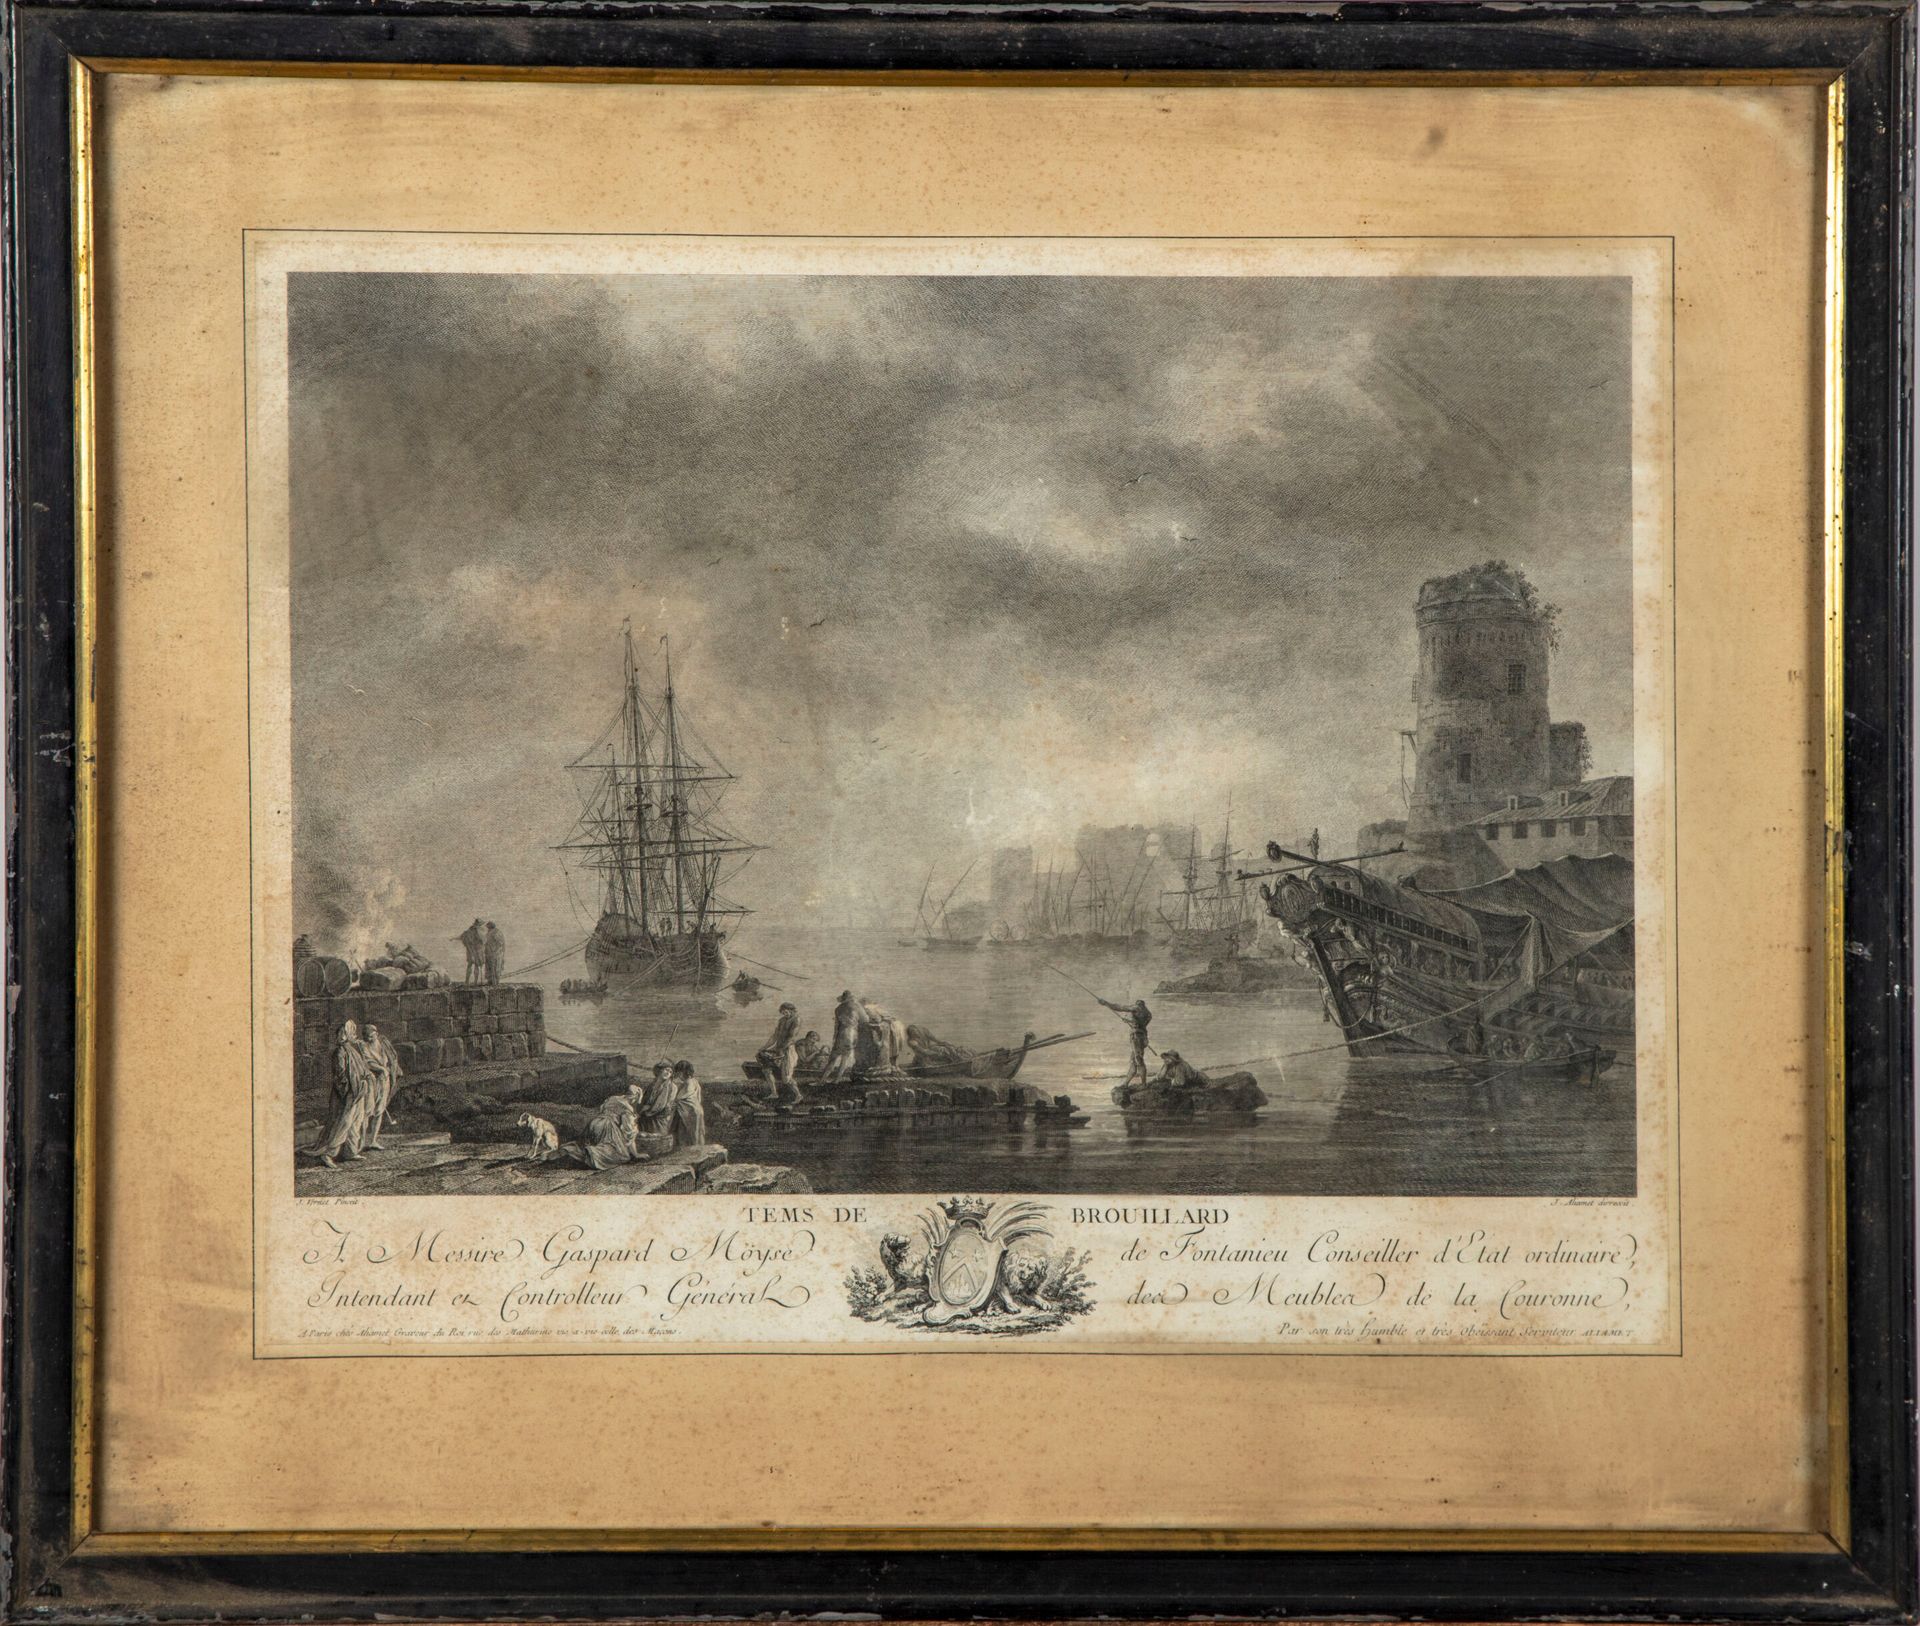 VERNET Según Joseph VERNET (1714-1789), grabado por ALIAMET 

Tiempo de niebla

&hellip;